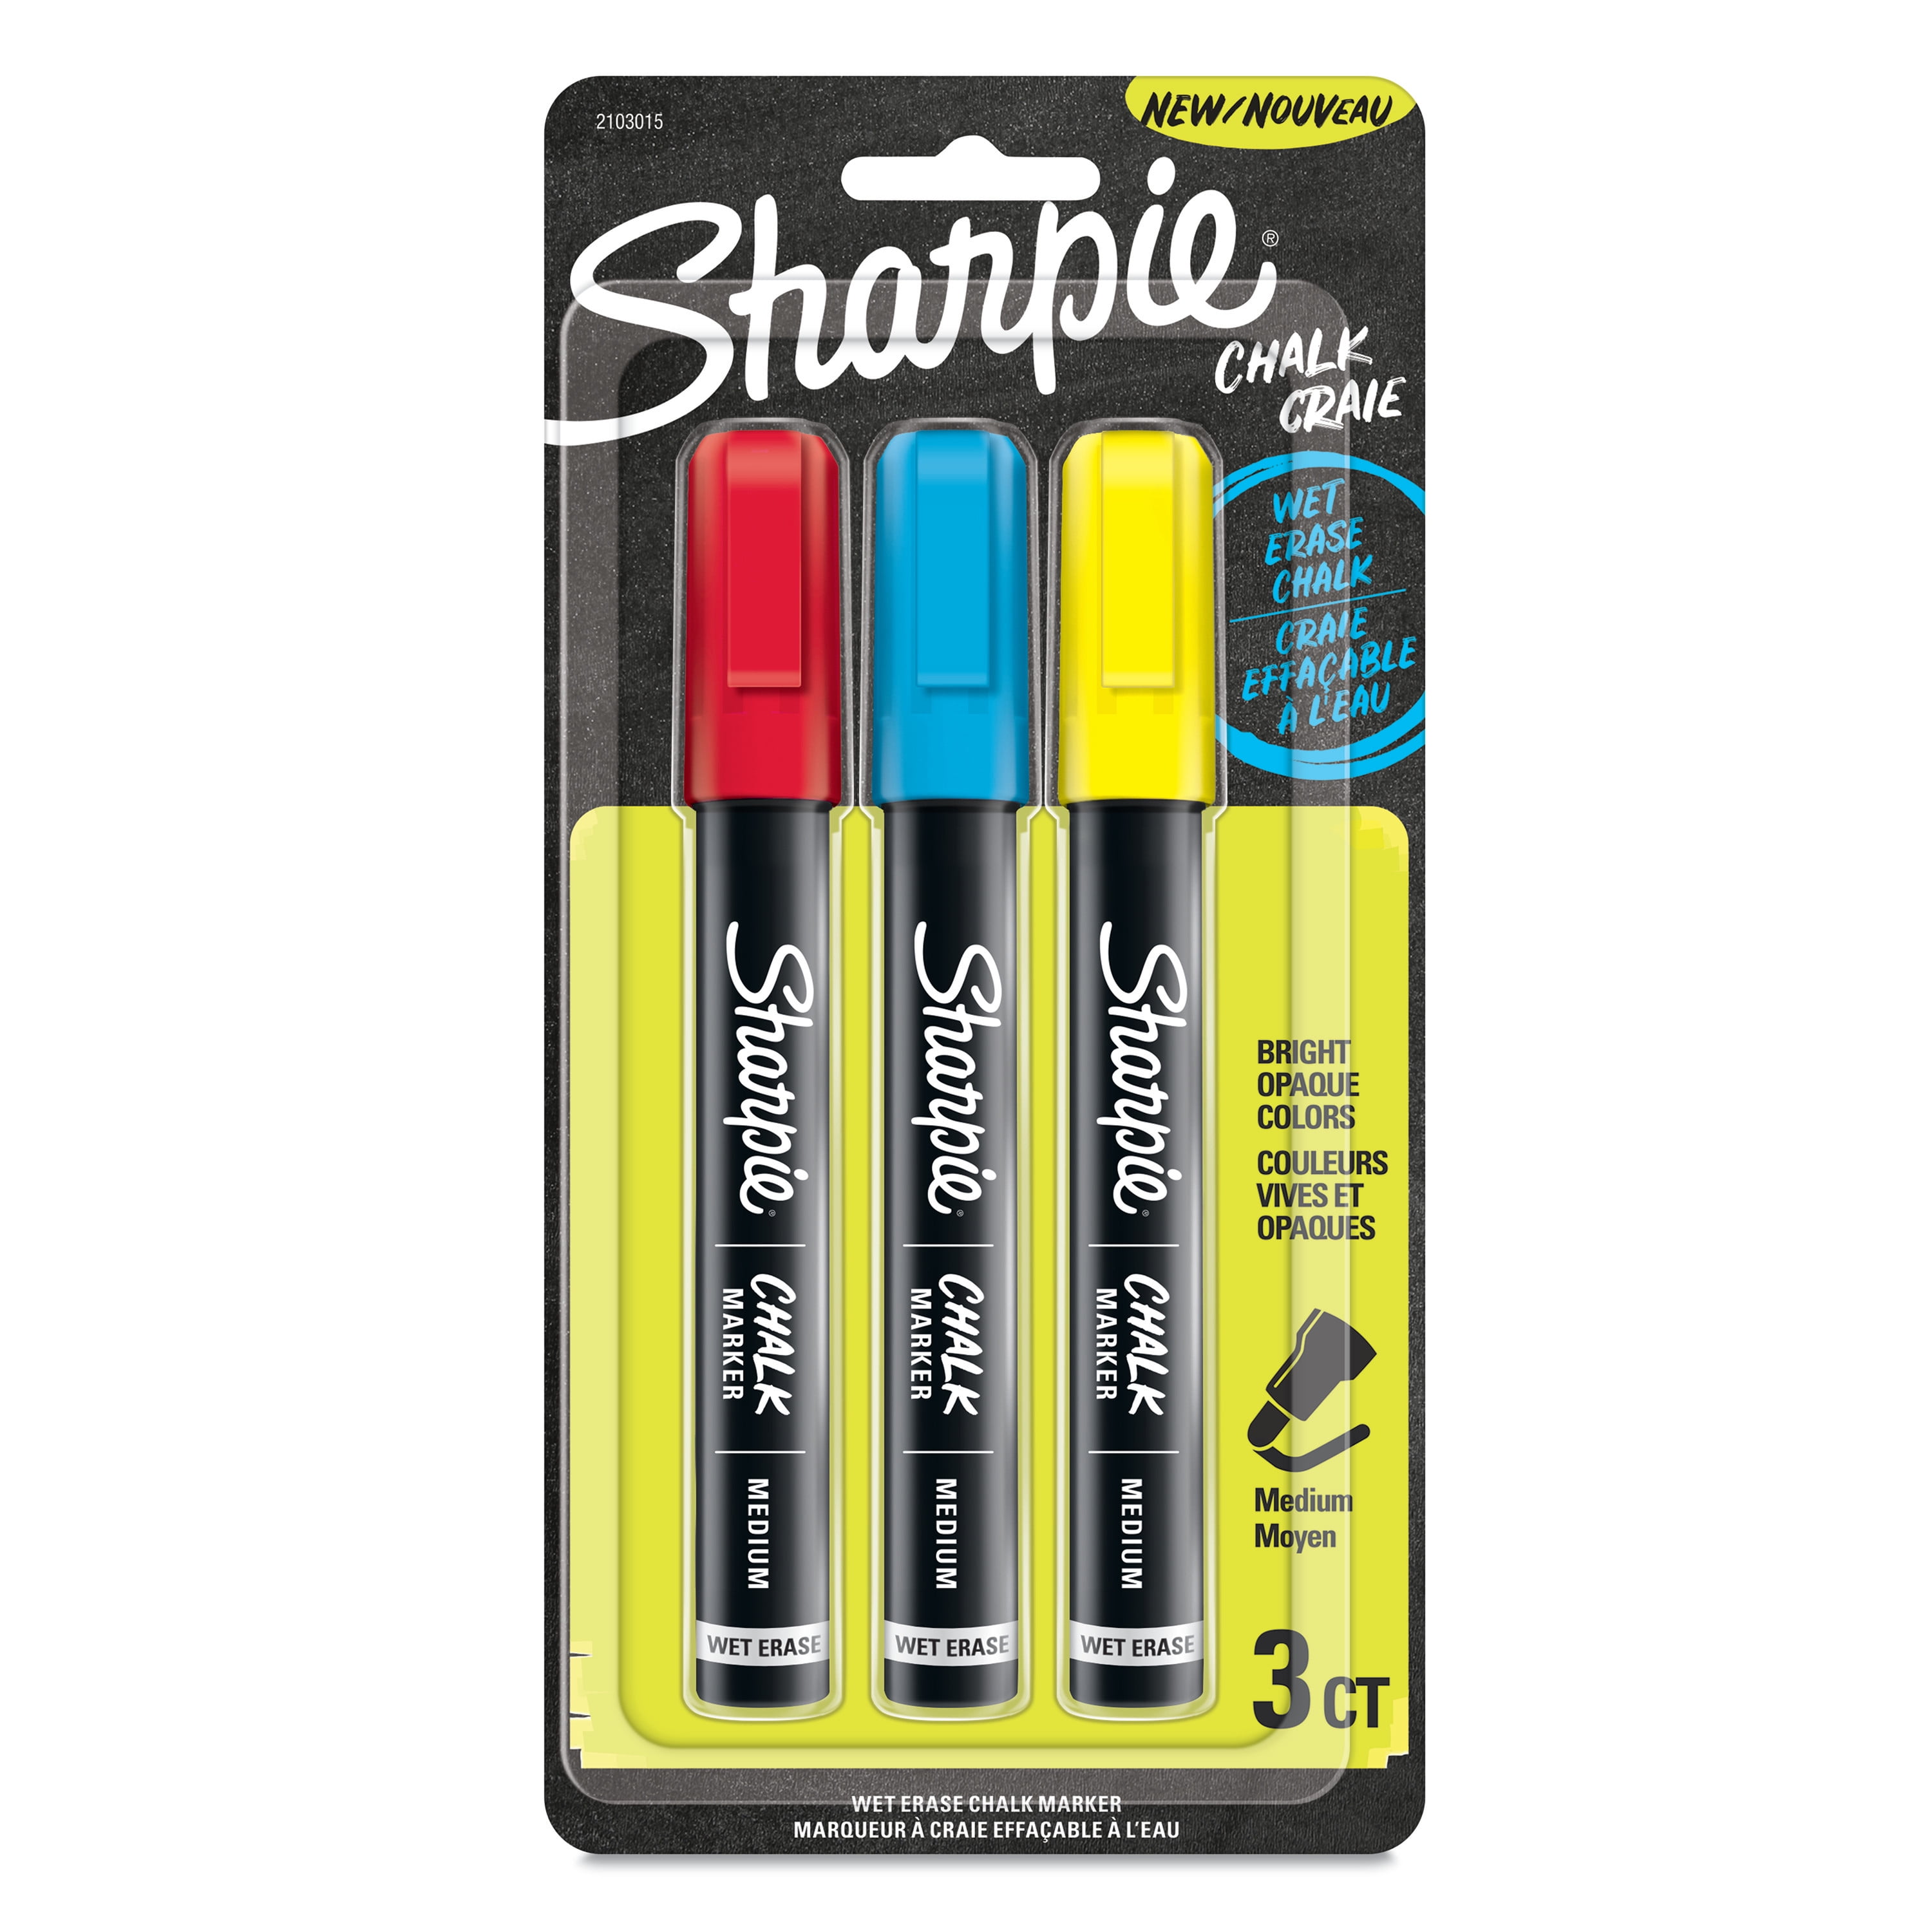 Sharpie Chalk Marker Set, 3-Color Primary Set